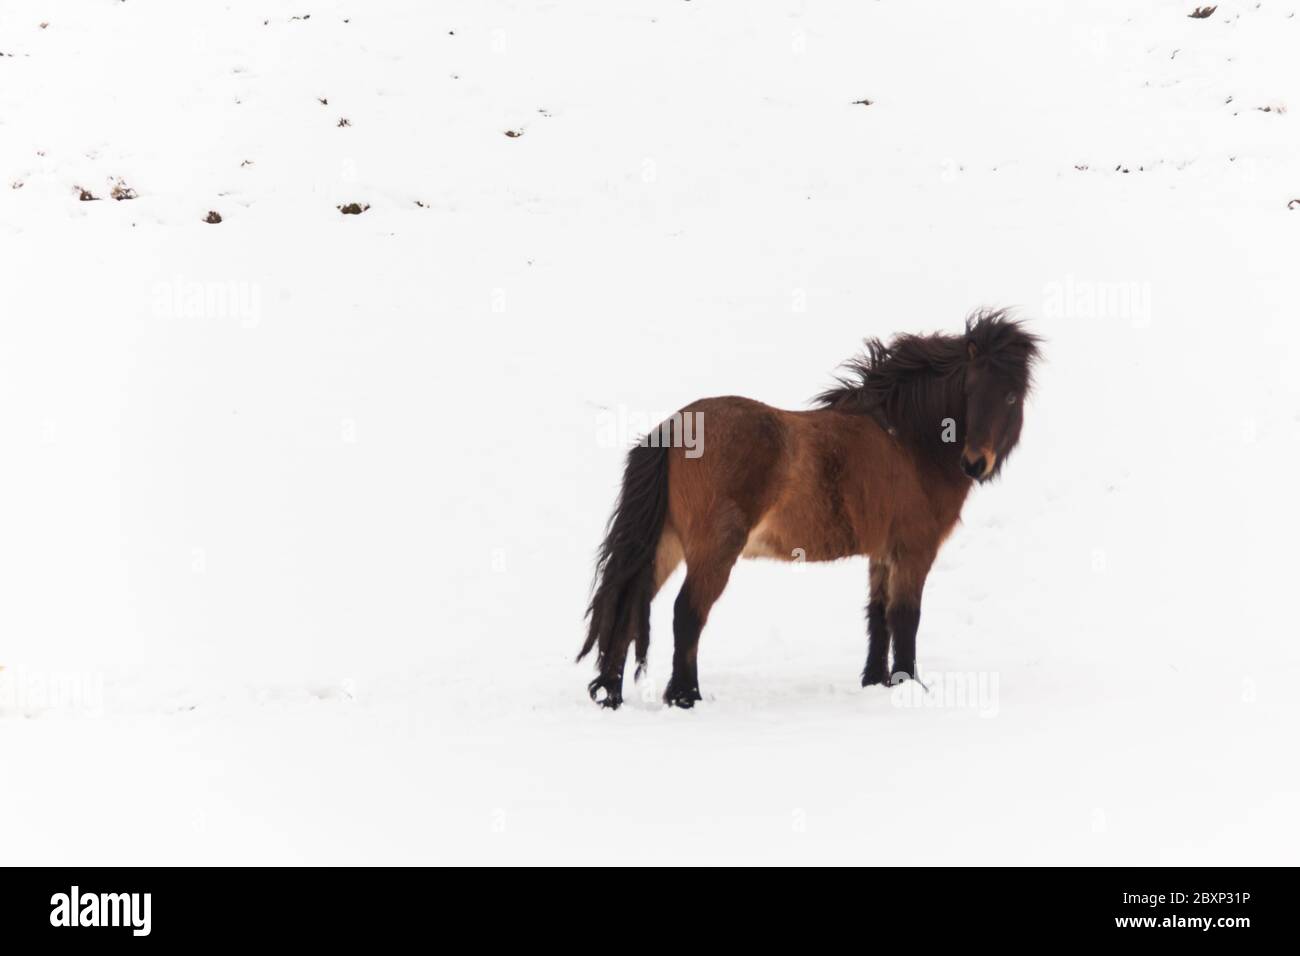 Islande véritable cheval pendant la neige d'hiver pour la photographie d'animaux Banque D'Images